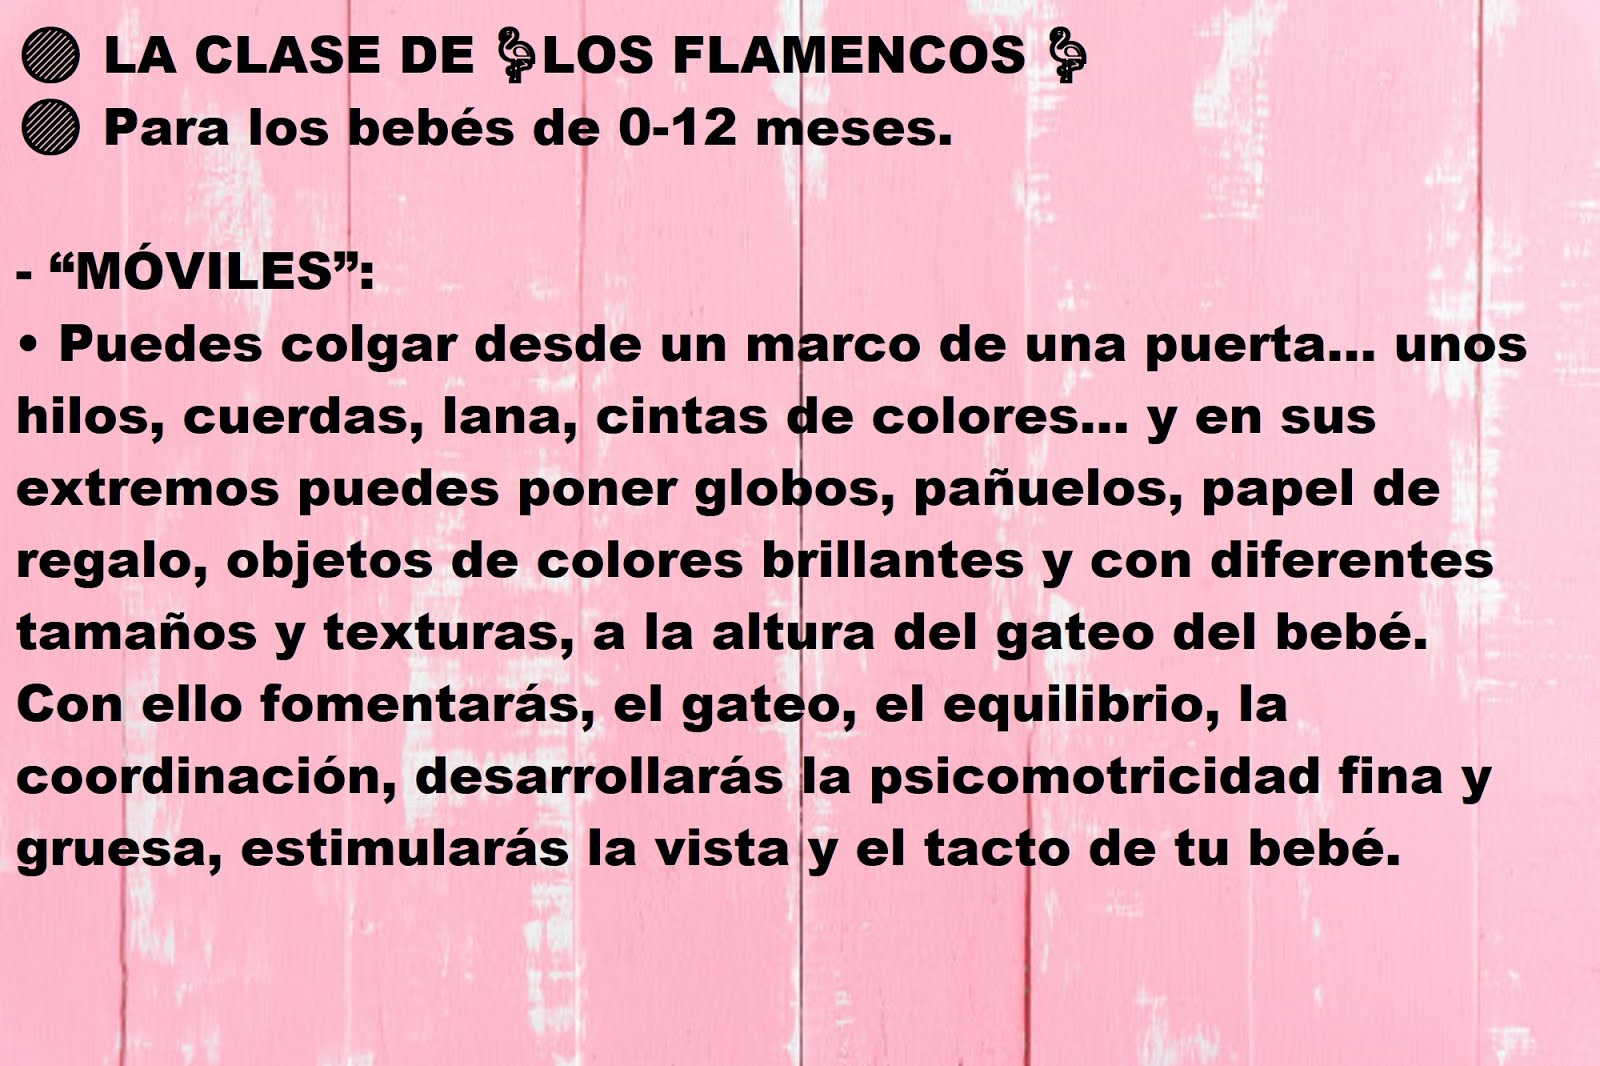 Flamencos 27/03/20